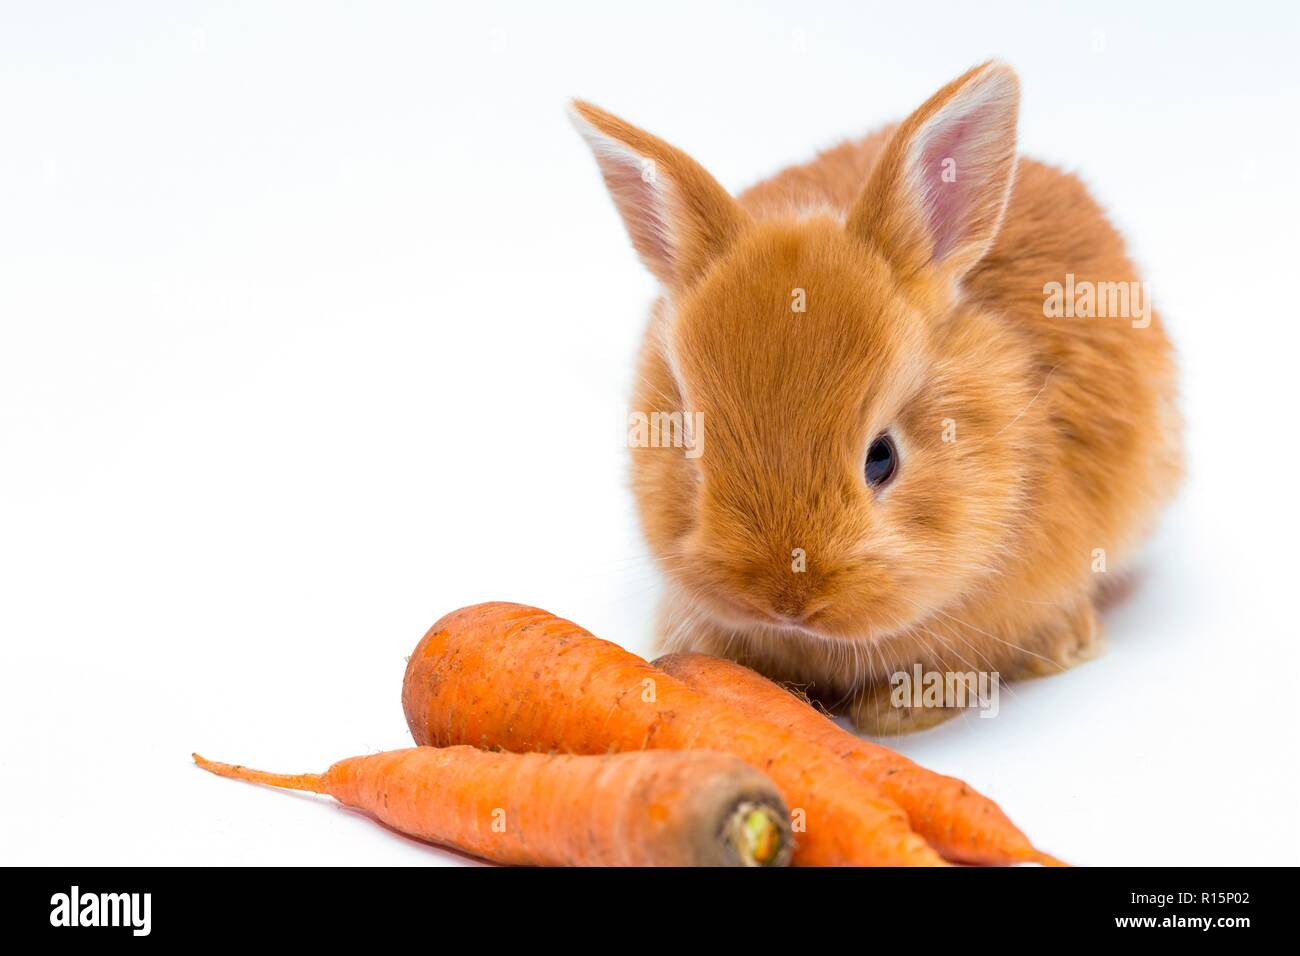 Rothaarige Kleine Hase Und Karotte Stockfotografie Alamy